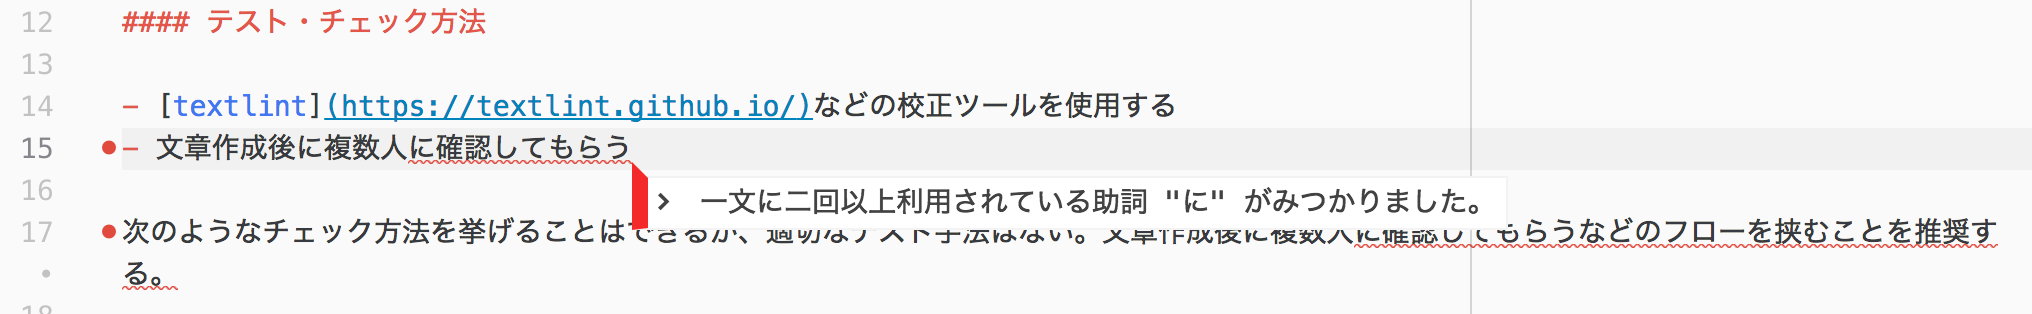 日本語として不適切な表現を用いている文章の下に赤い波線が引かれている。また、その下に具体的なエラー内容が表示されている。